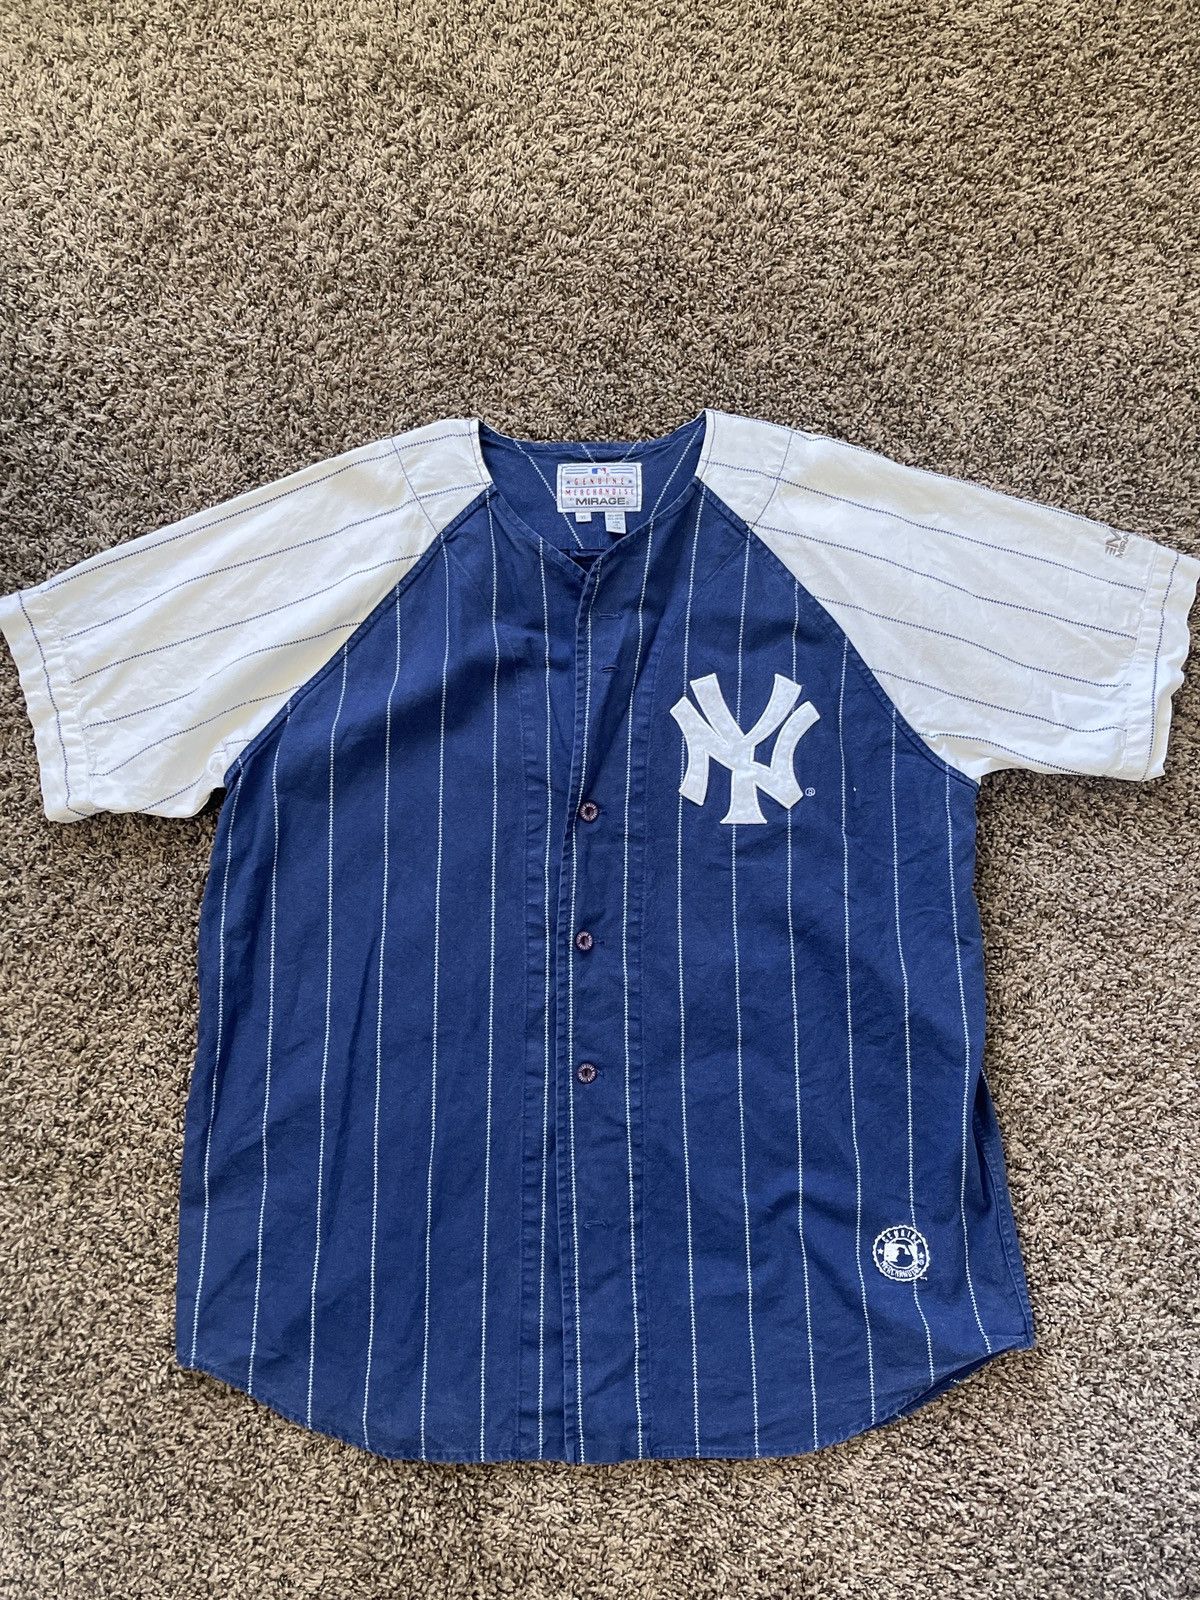 Genuine Merchandise By True Fan Vintage Bernie Williams Pinstripe Yankee Jersey Size US XL / EU 56 / 4 - 1 Preview